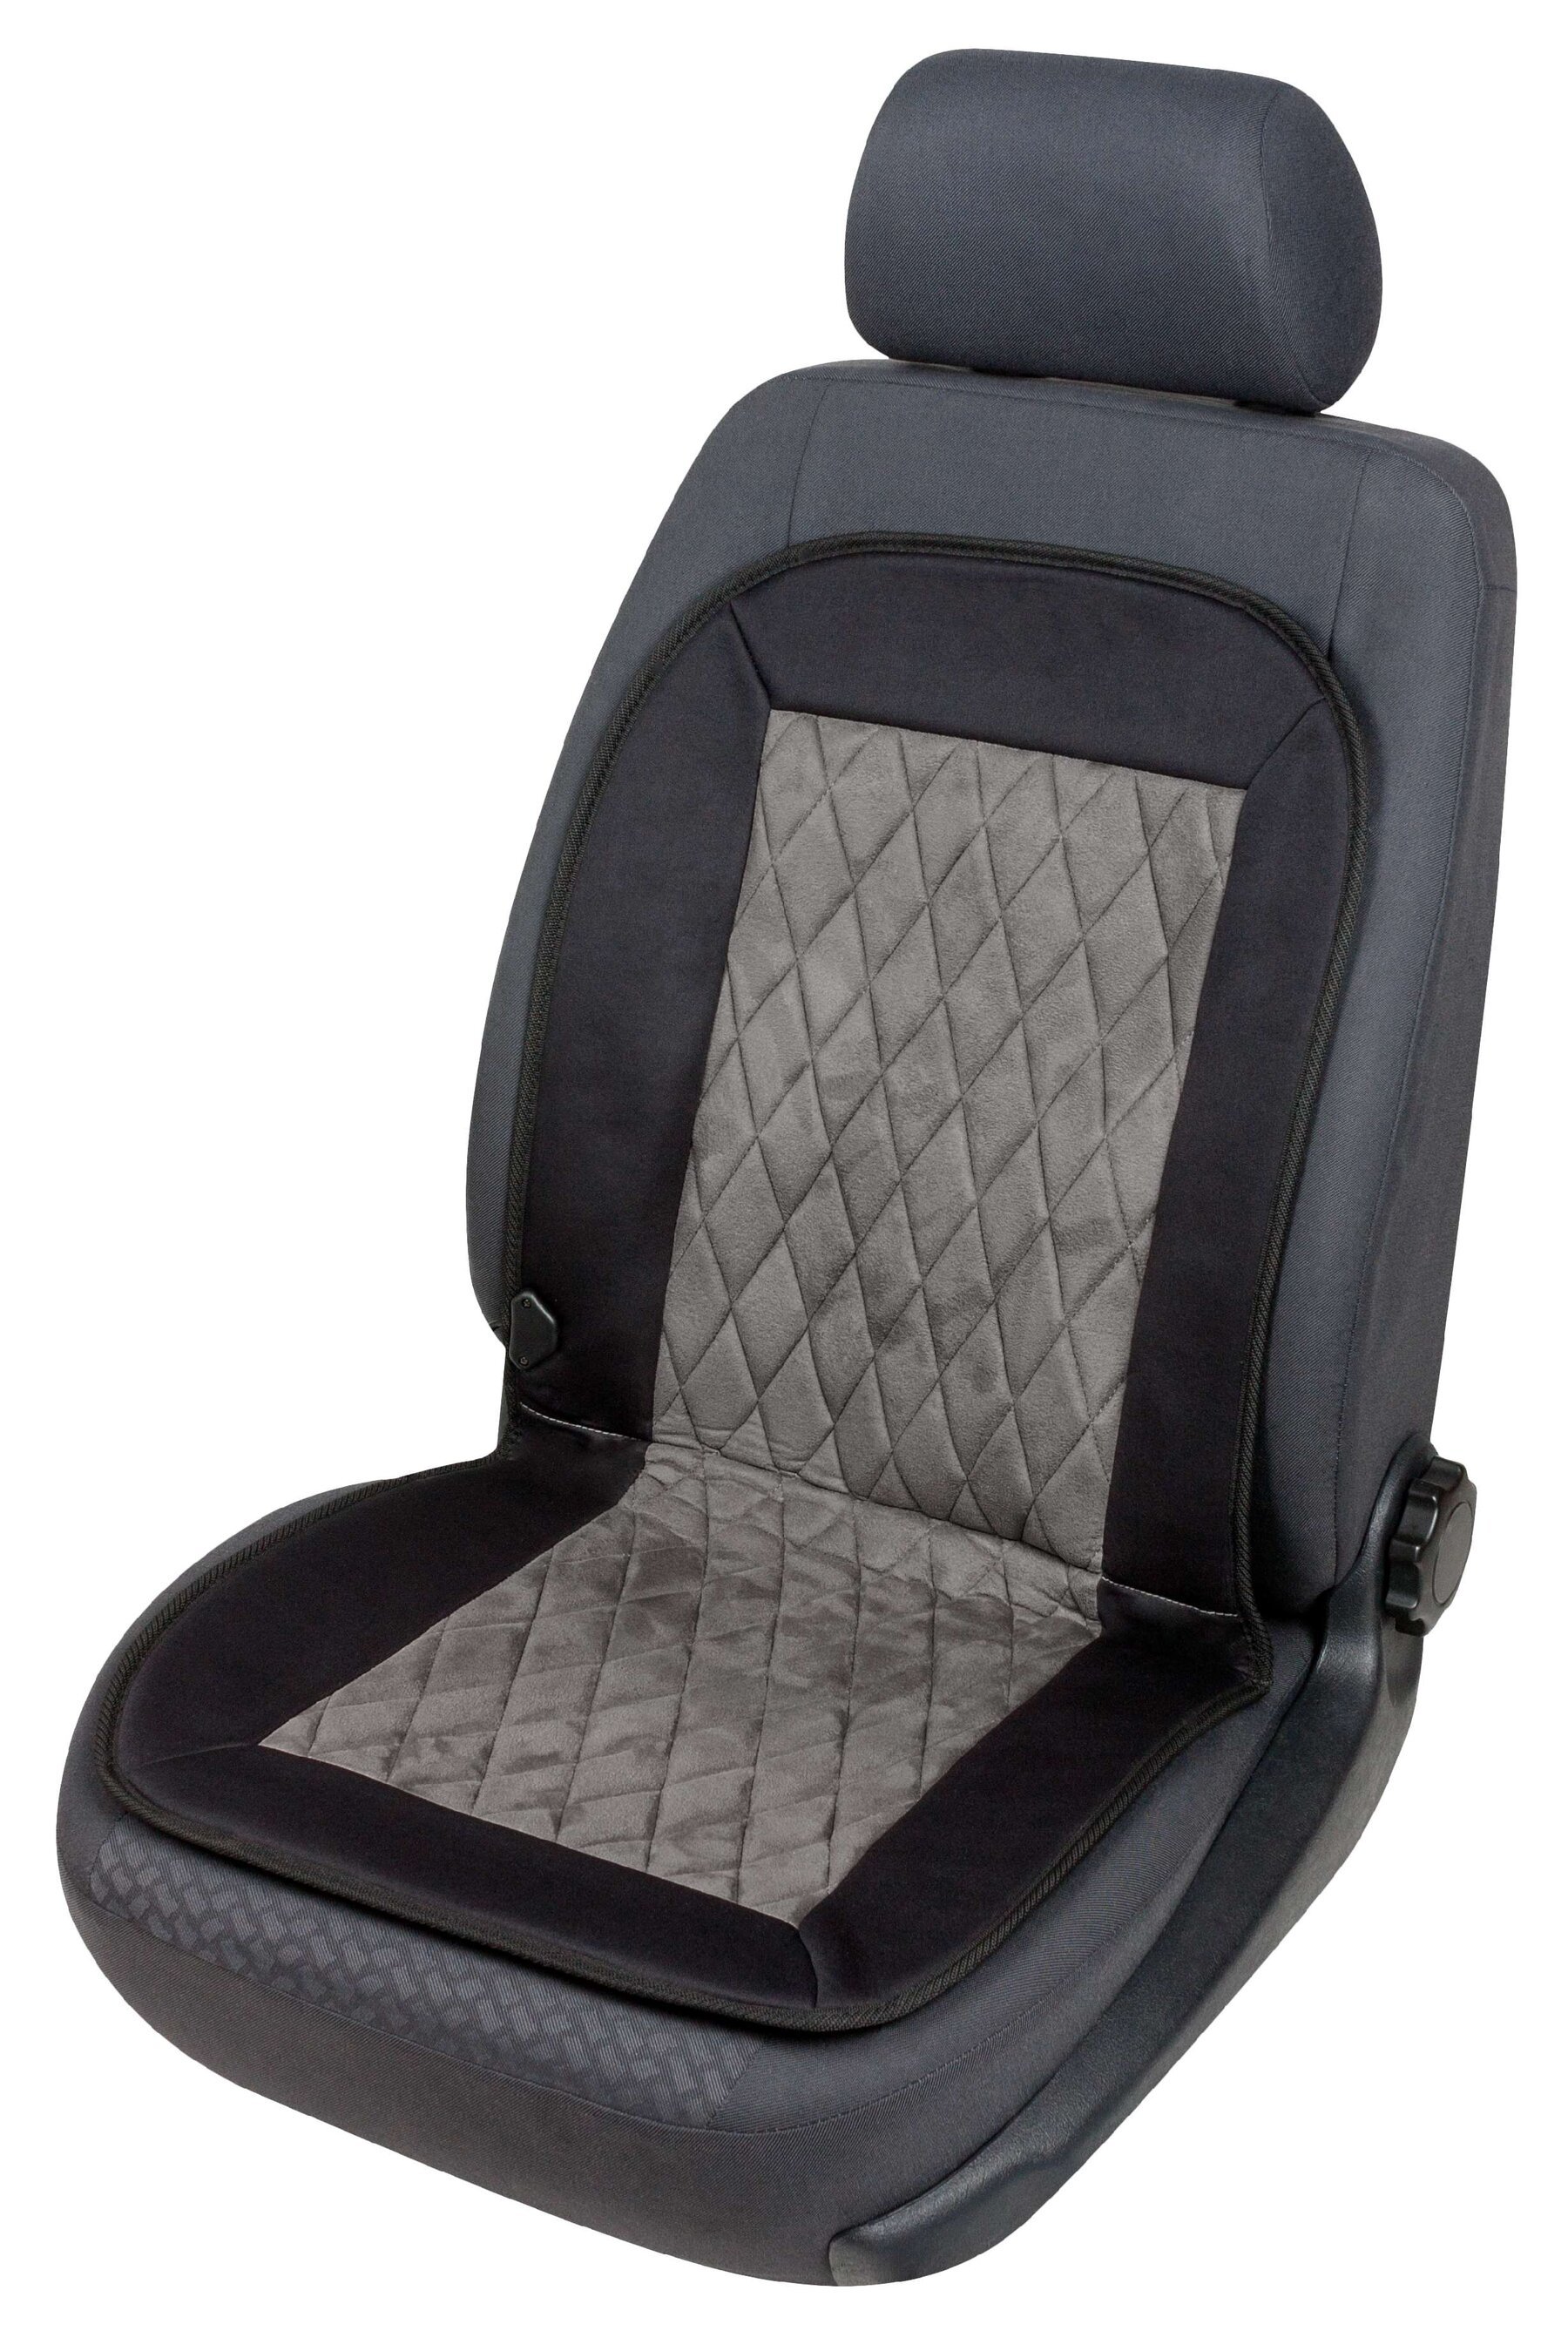 seggiolino auto riscaldamento pad riscaldamento sedile sedile Carbon Elegance nero grigio